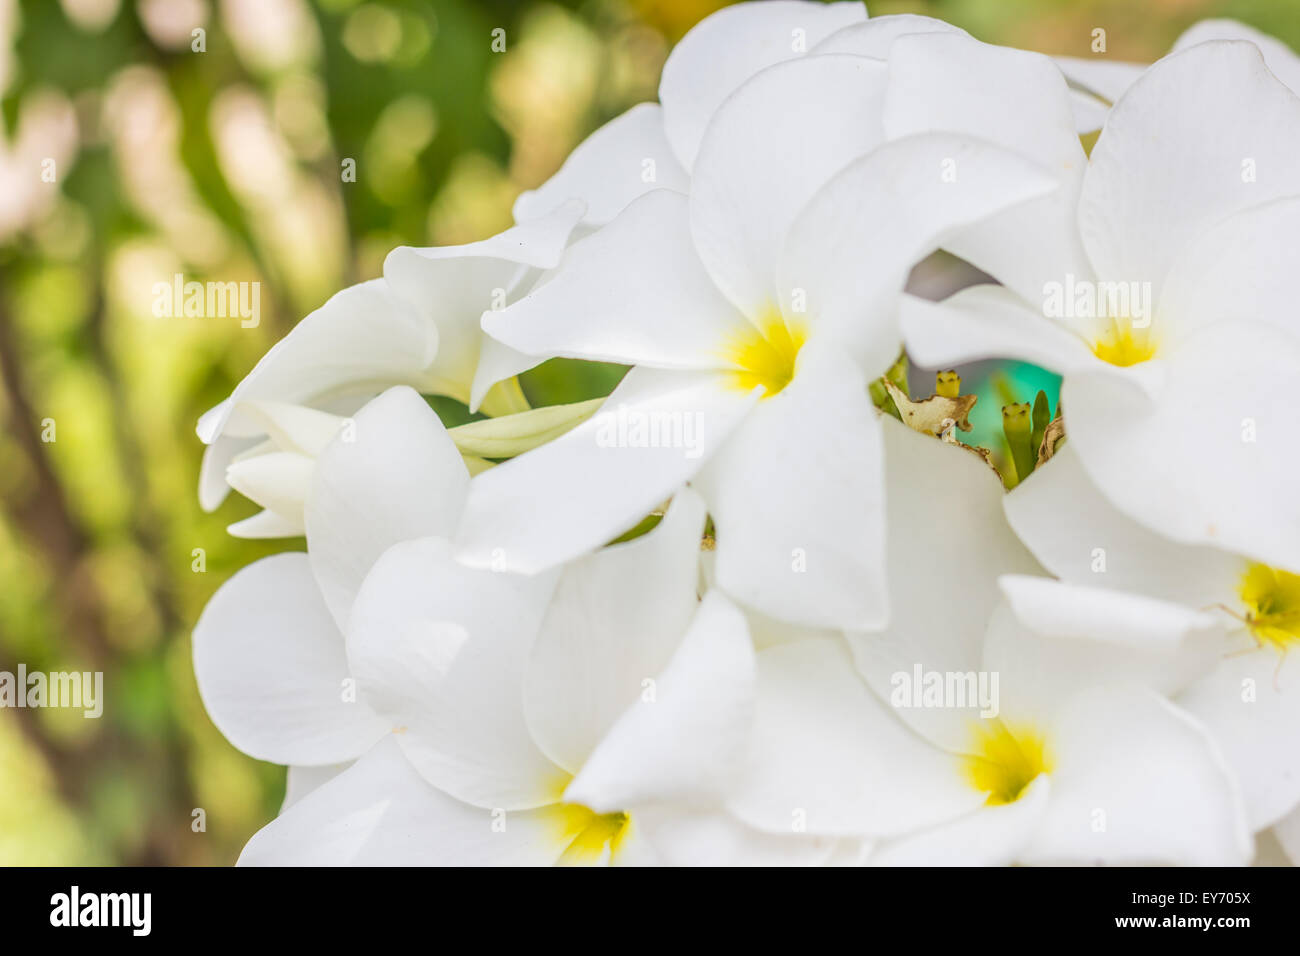 La purezza del bianco Plumeria o Frangipani i fiori sbocciano i fiori di albero tropicale Foto Stock